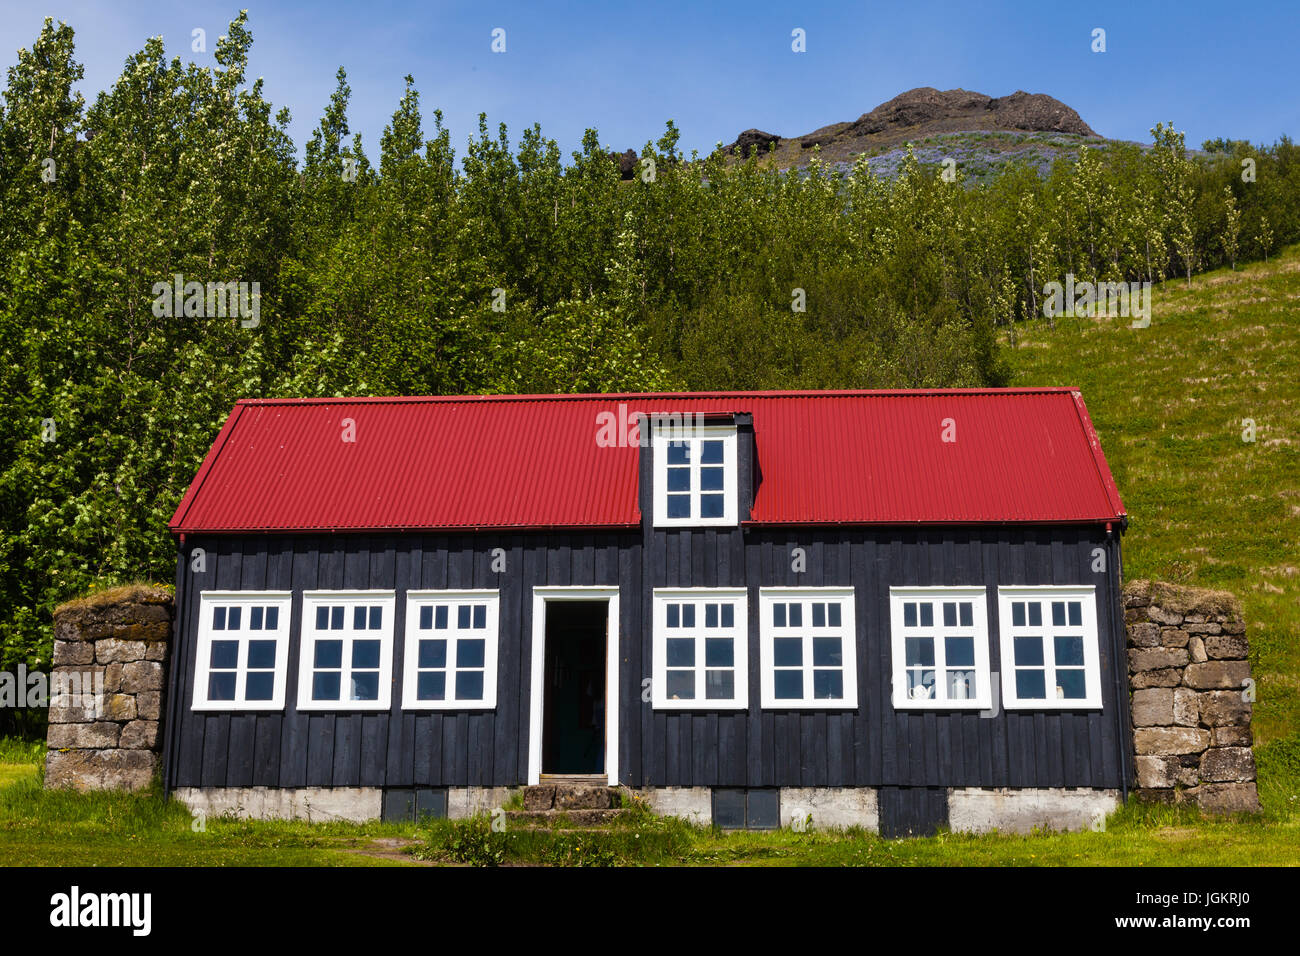 Chambre entièrement construit de bois flotté maintenant à la musée folklorique de Skogar en Islande Banque D'Images